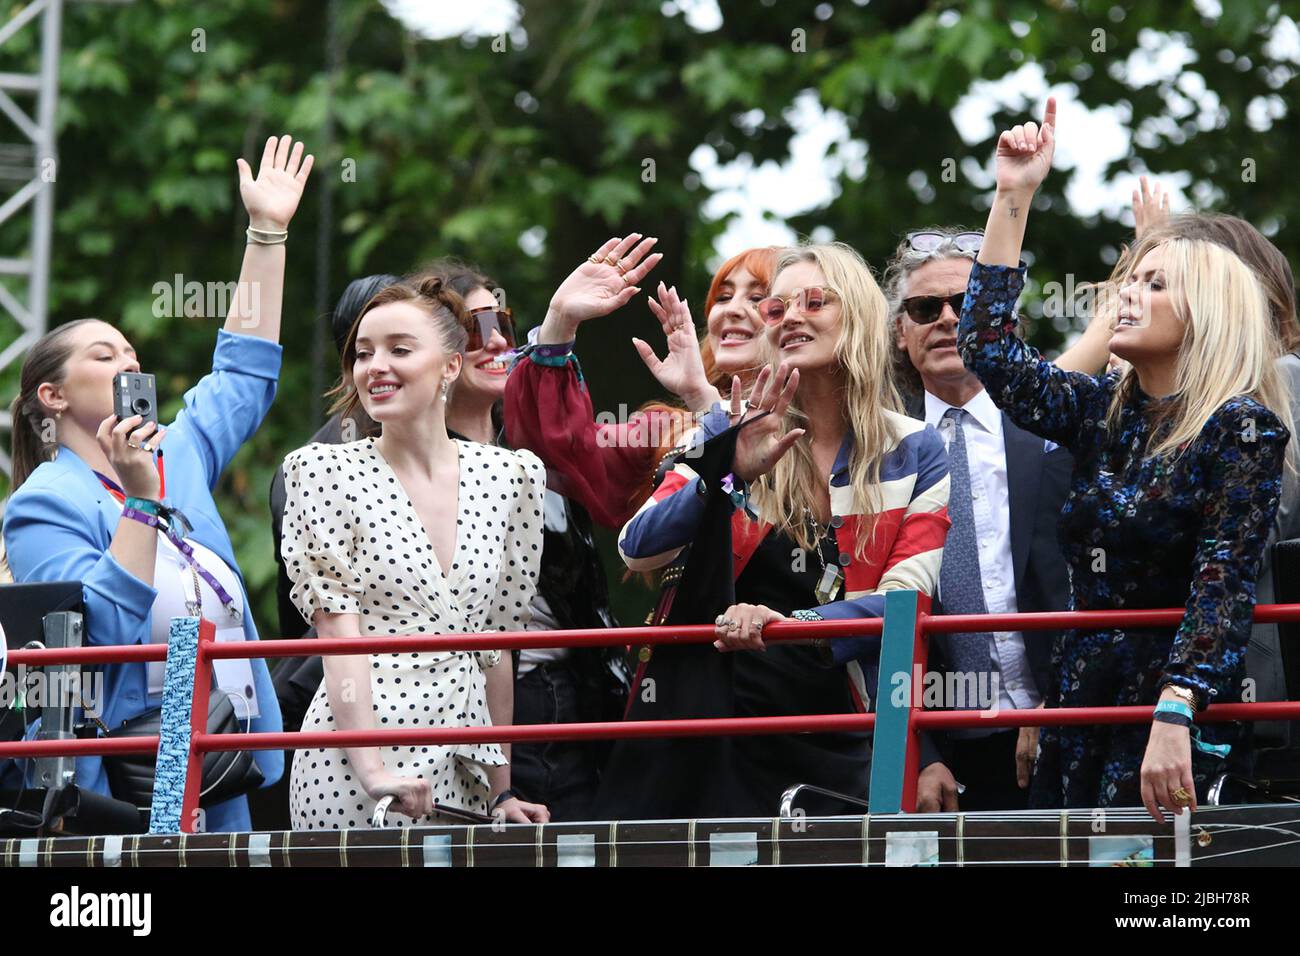 (De gauche à droite) Phoebe Harriet Dynevor est aux côtés de Charlotte Tilbury, Kate Moss & Patricia ( Patsy ) Jude Kensit. Tous les quatre sont sur un bus à toit ouvert au Platinum Jubilee Pageant 2022 dans le Mall, Londres. Banque D'Images